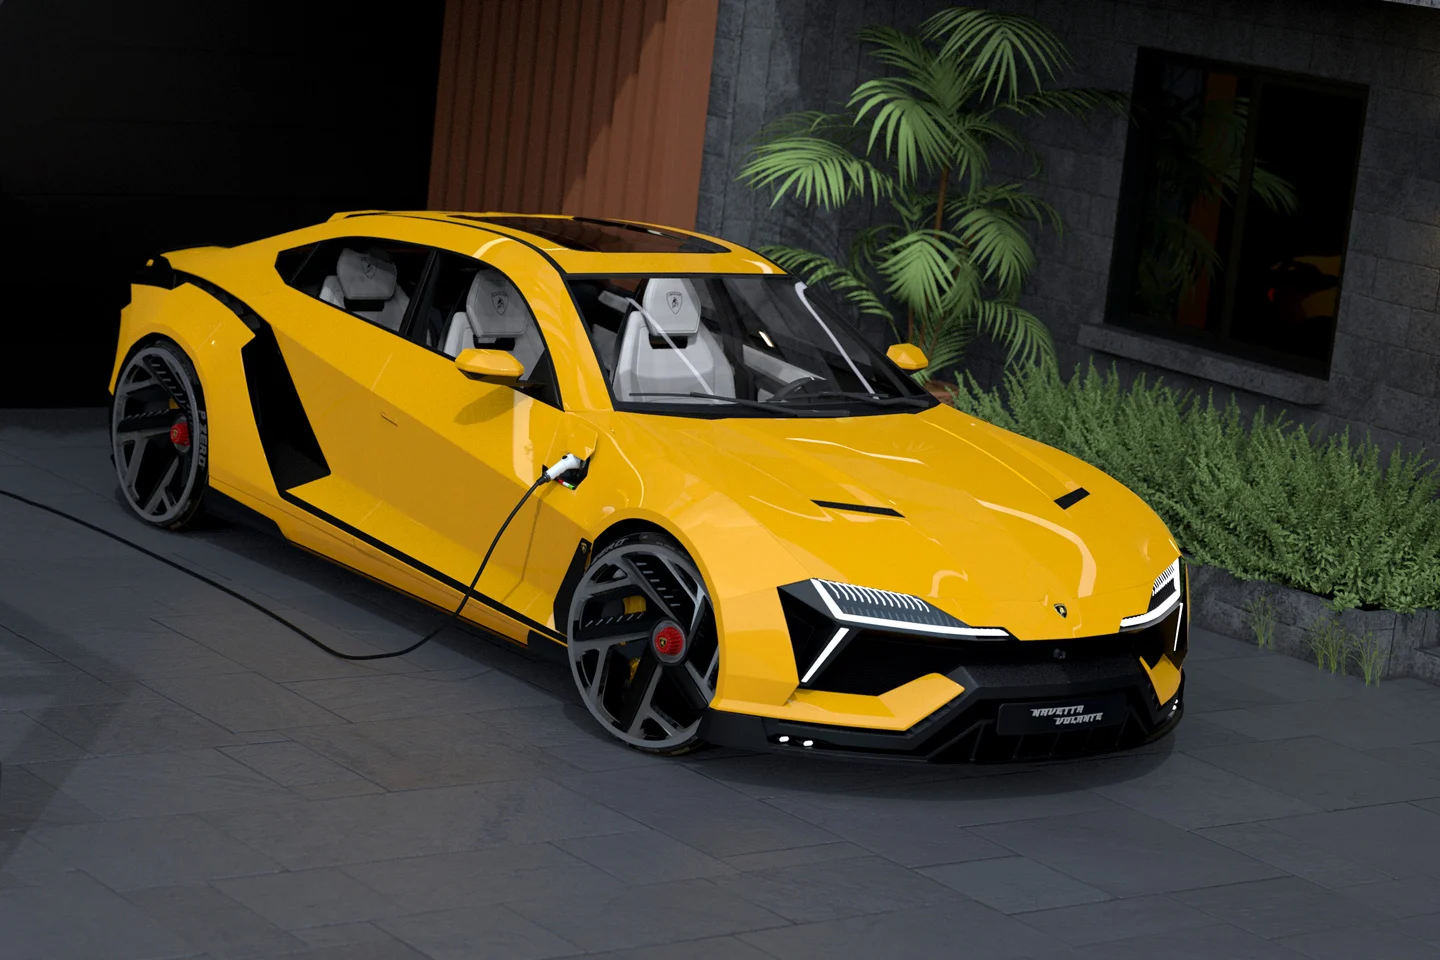 Lamborghini-inspired-automotive-concept-designs-2022